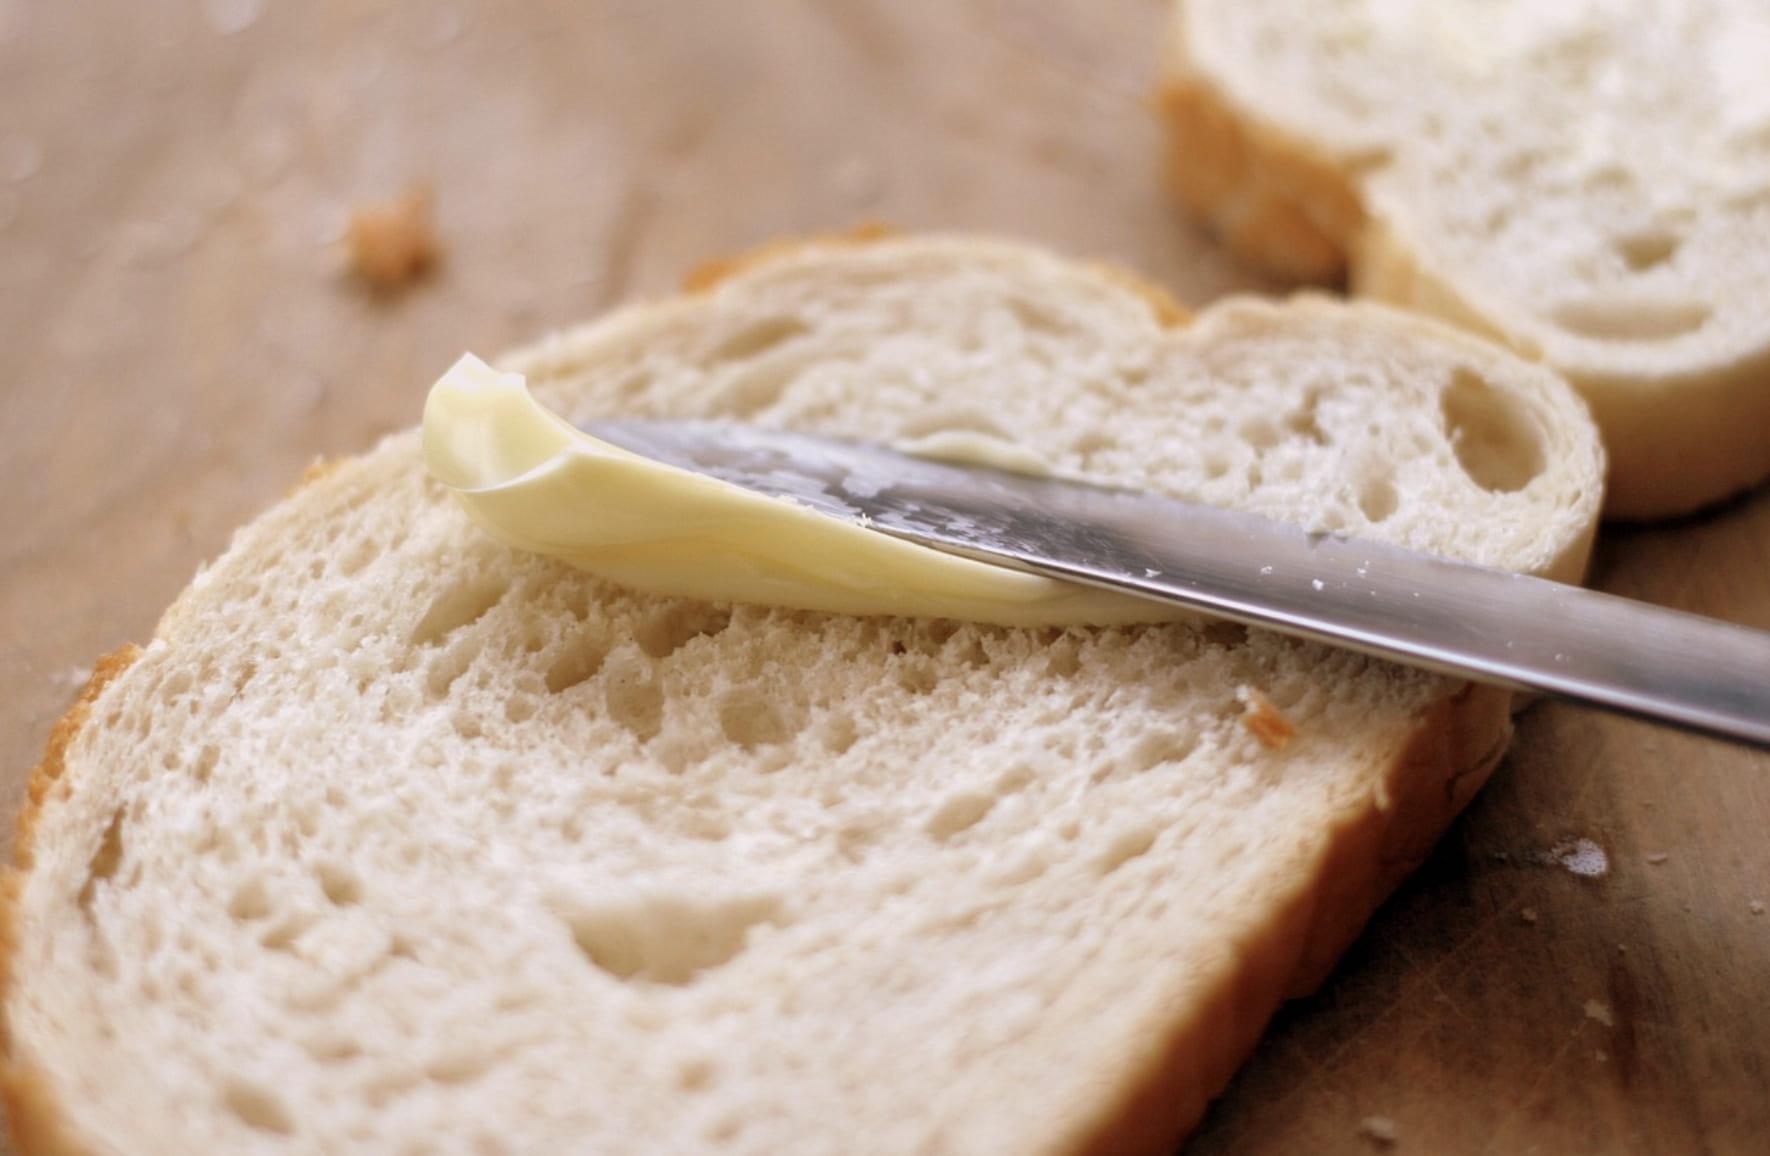 Ce produs e mai sănătos: margarina sau untul? Ce spun experții